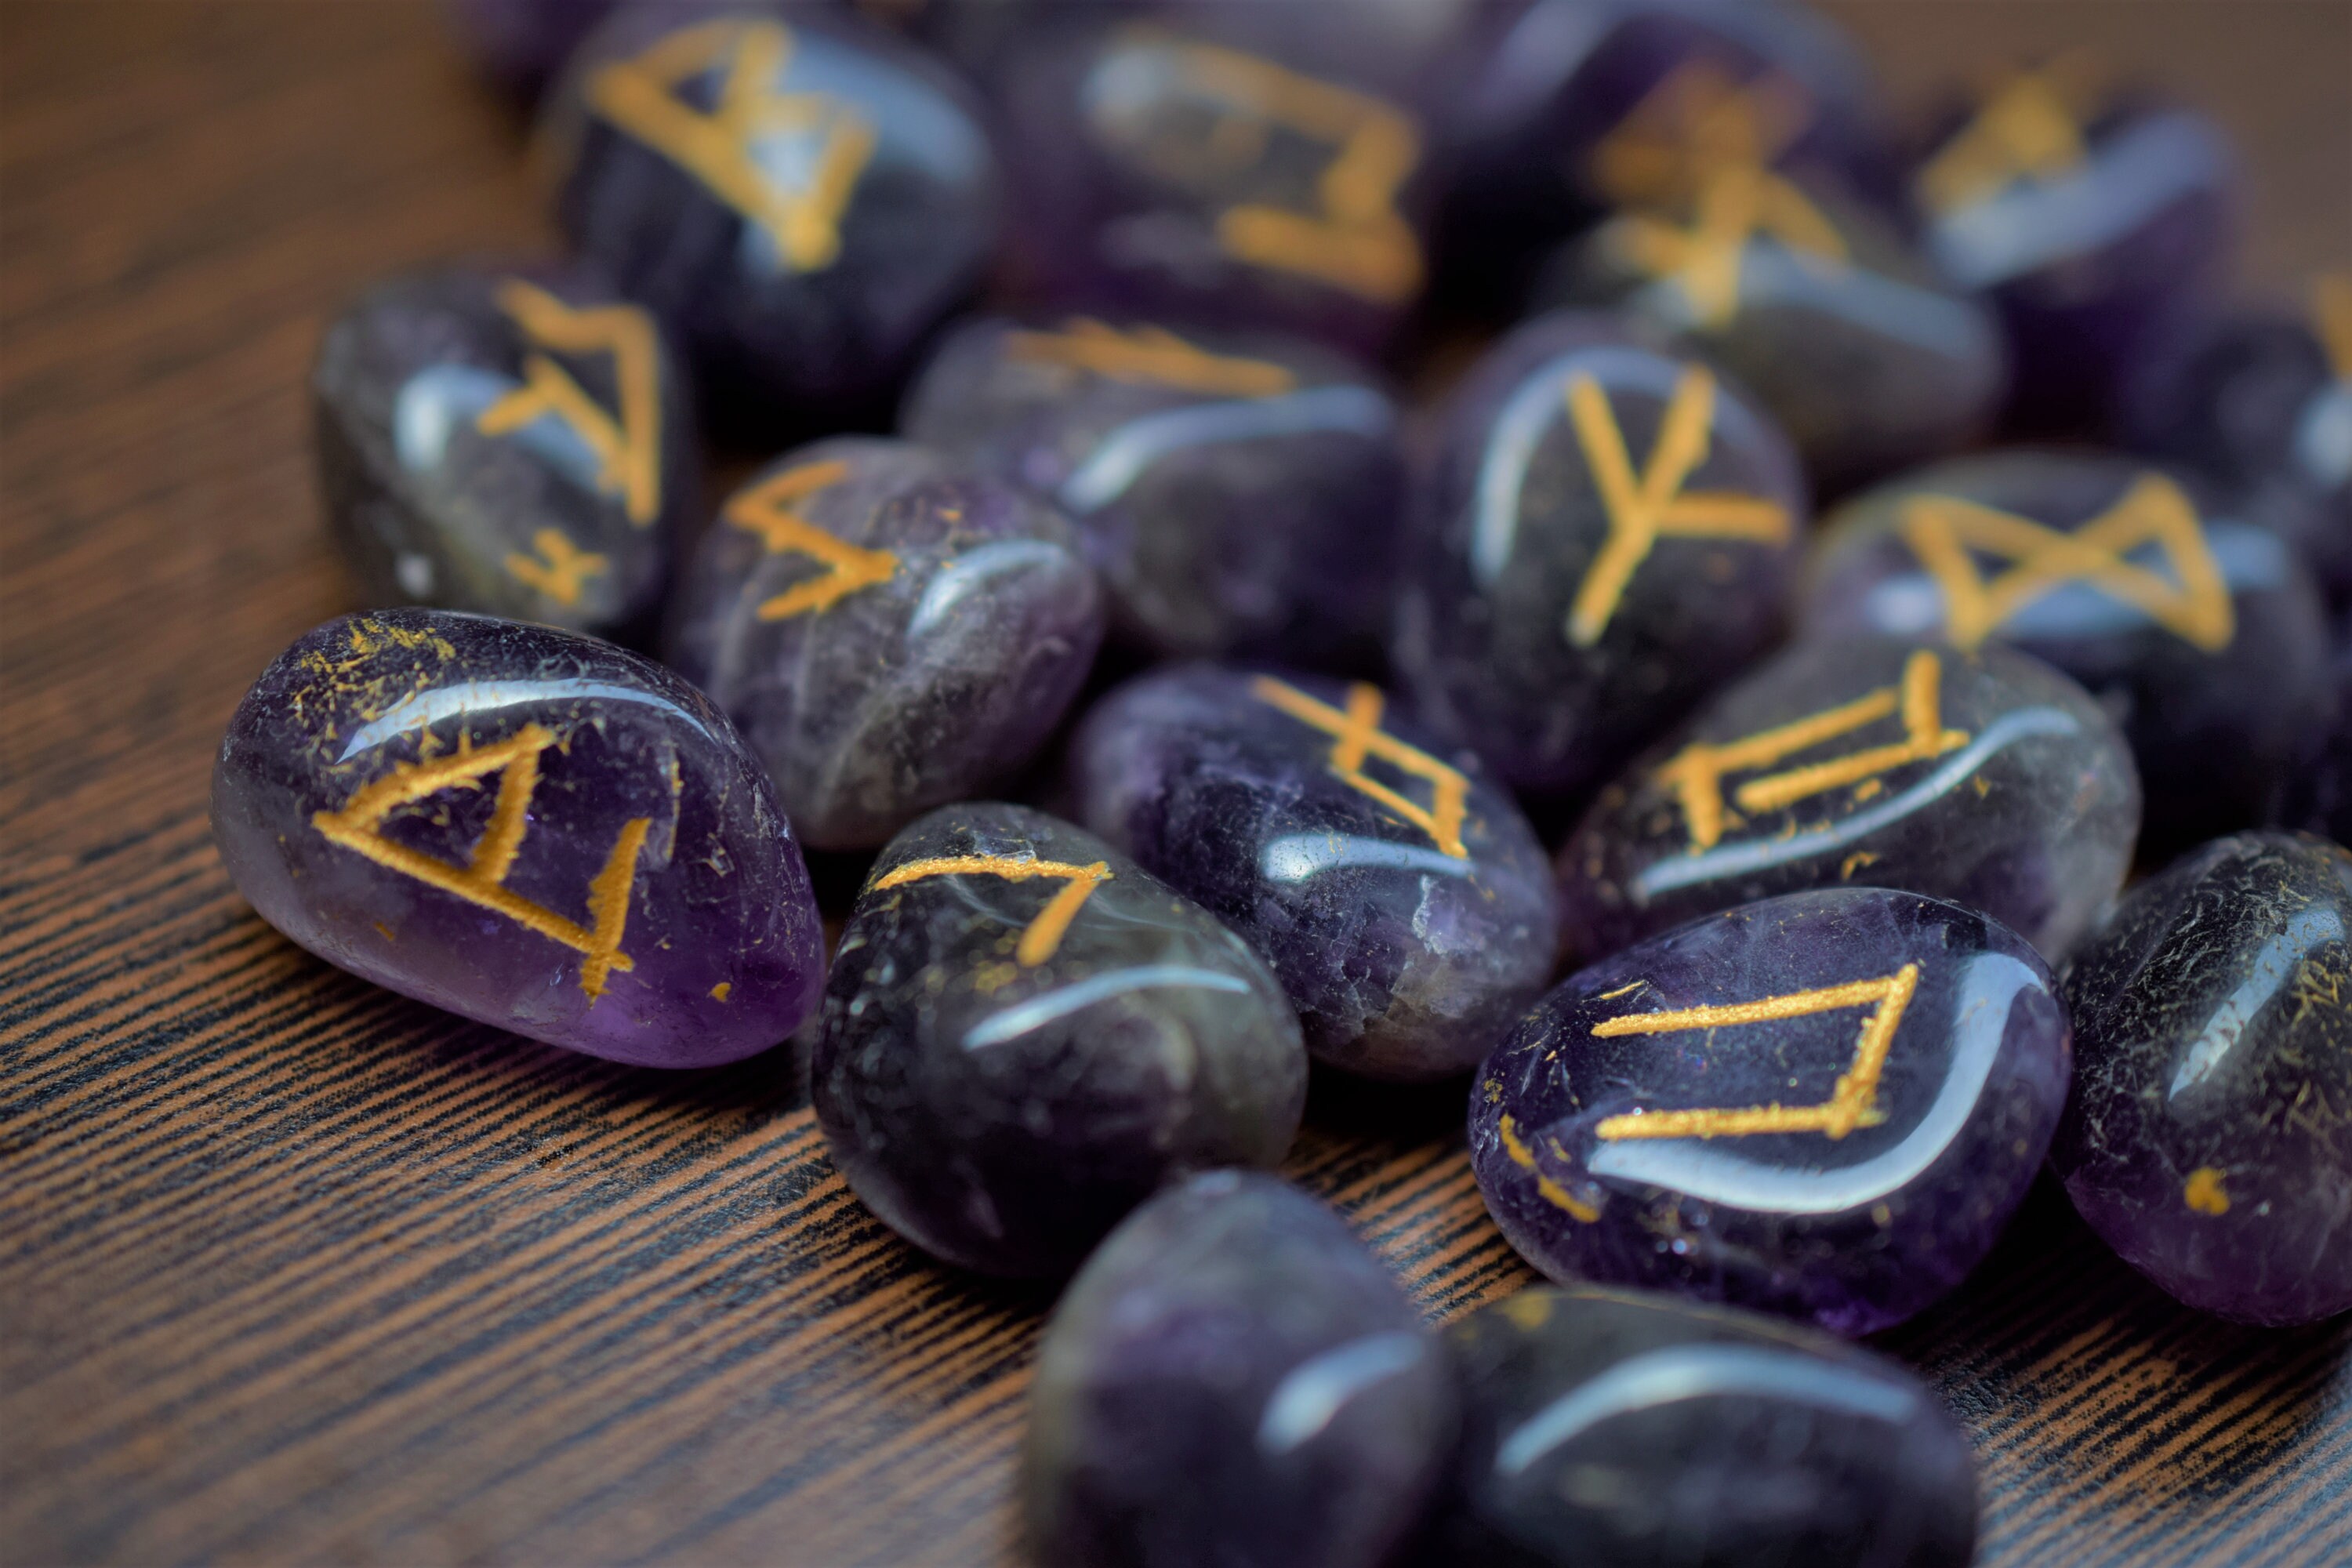 Runes divinatoires en pierre naturelle - Améthyste